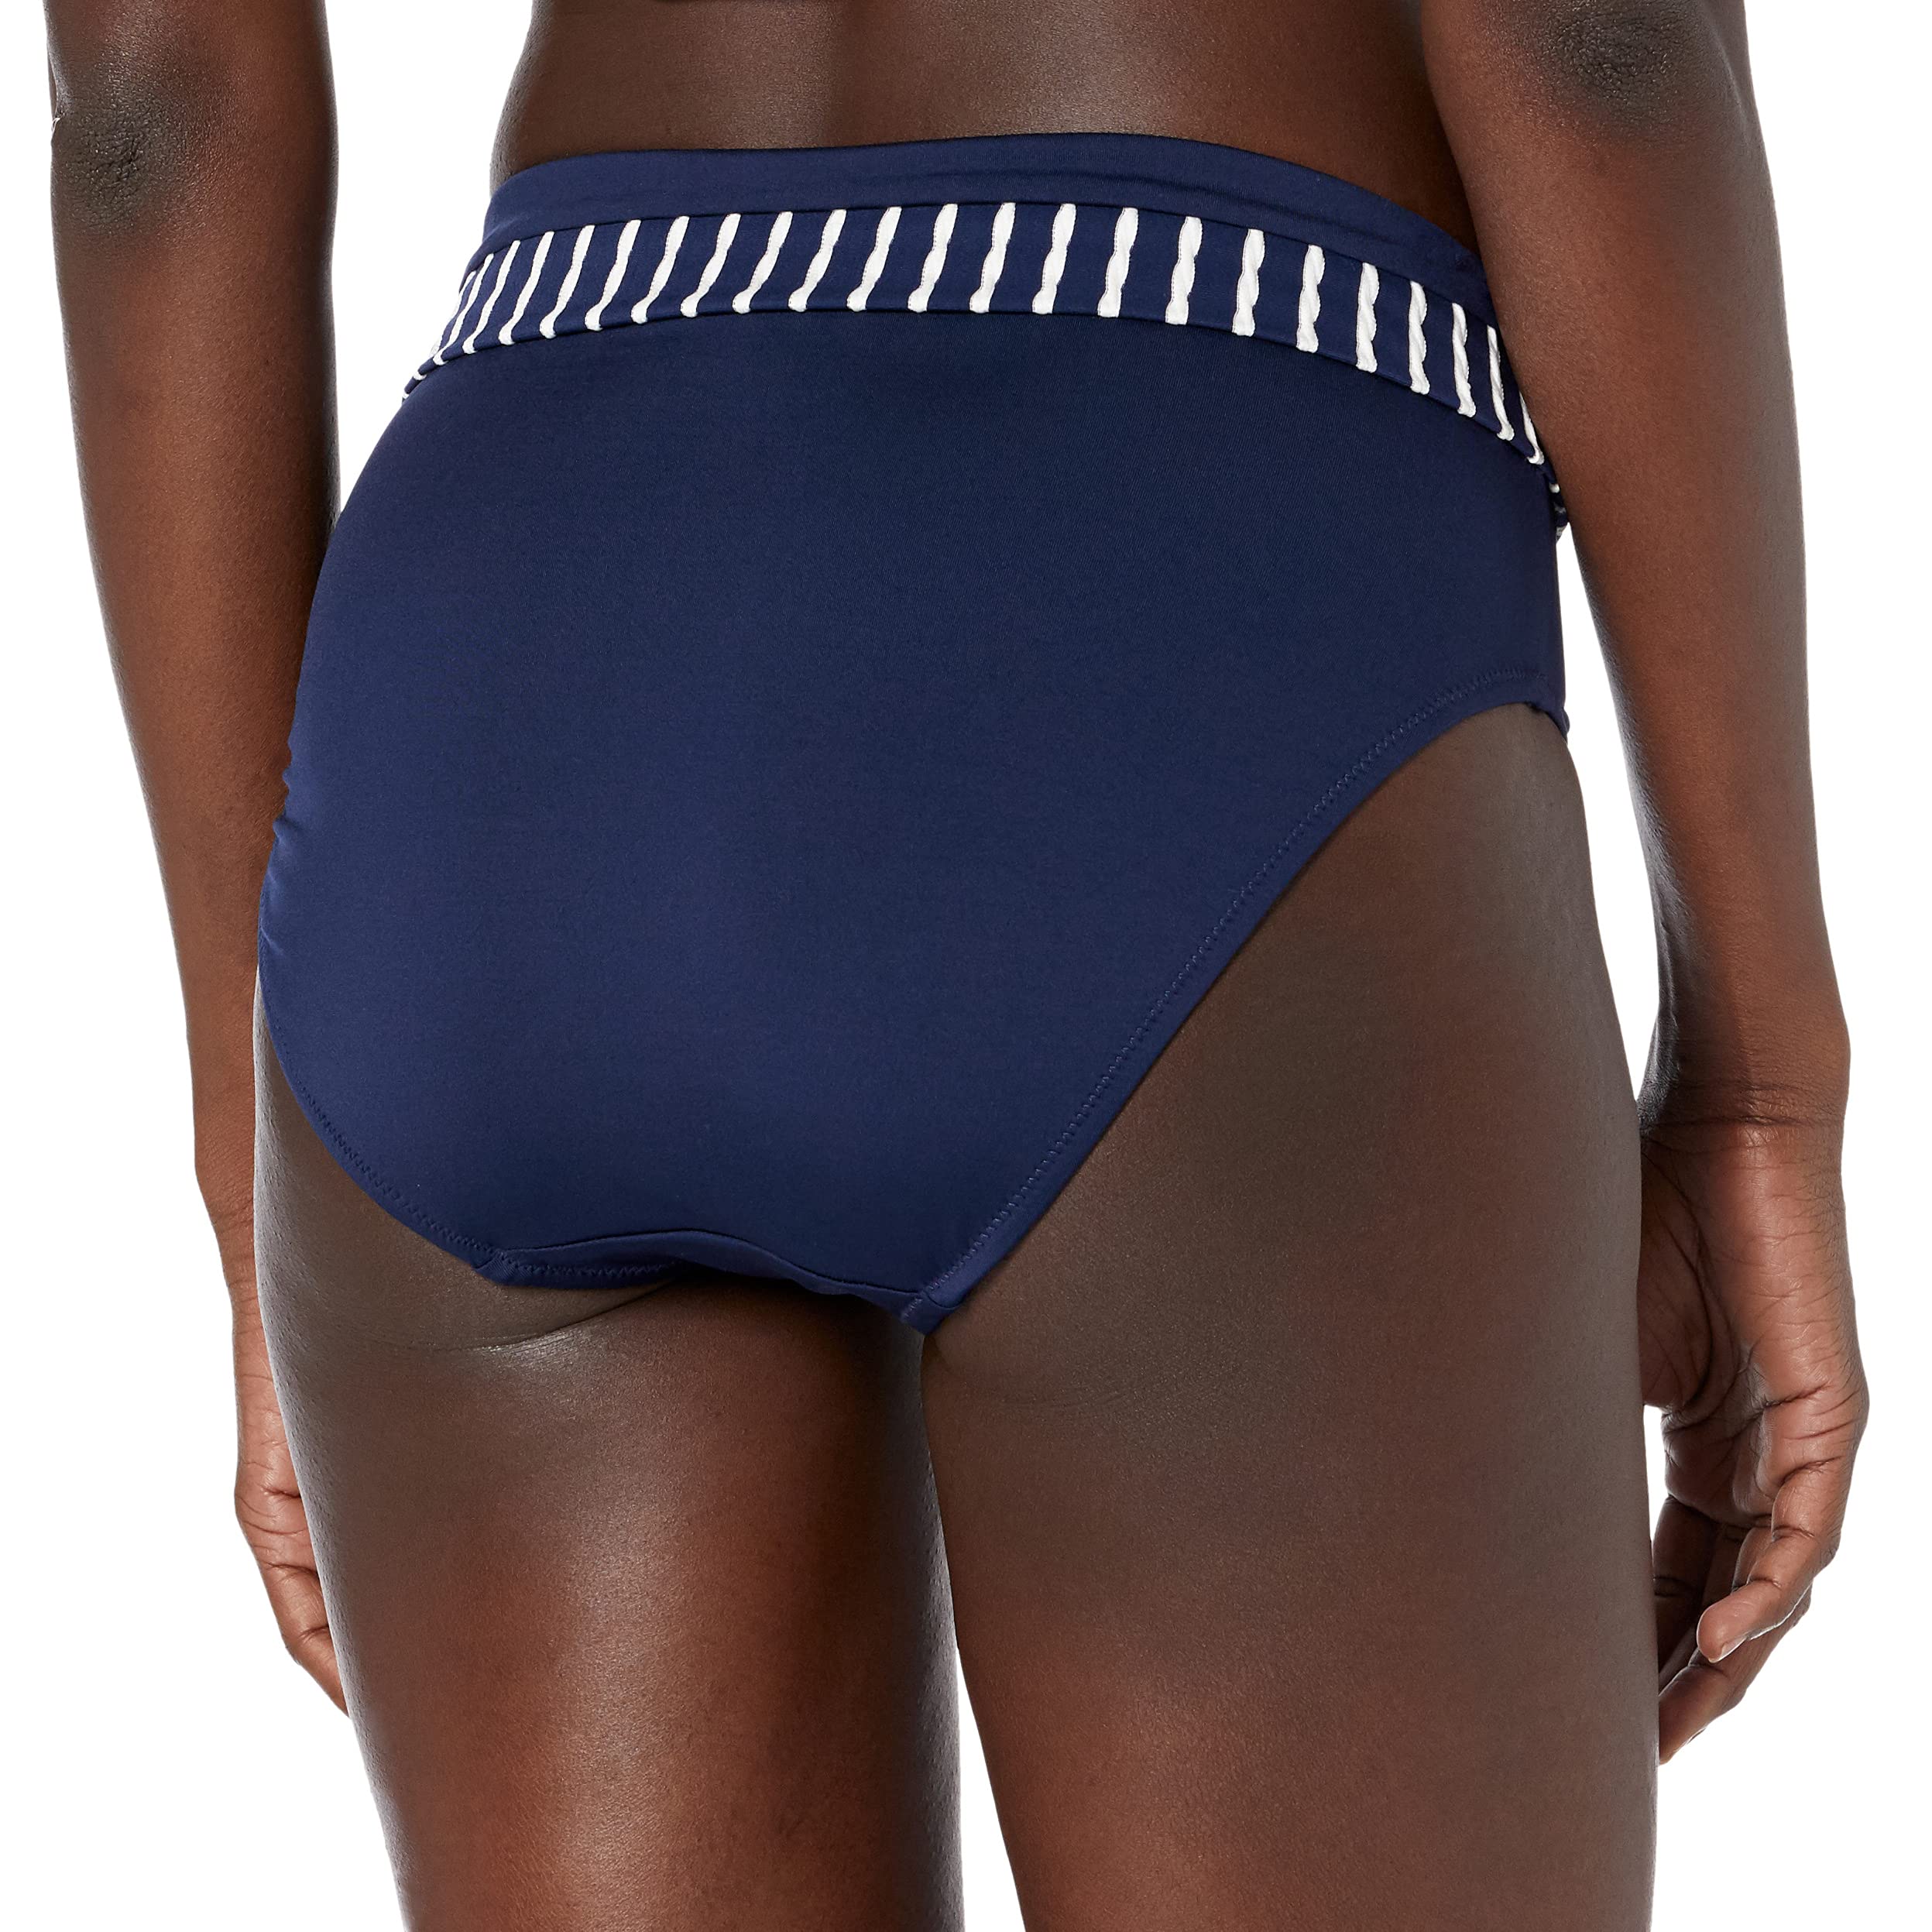 Fantasie Women's Standard San Remo Fold-Over Bikini Bottom